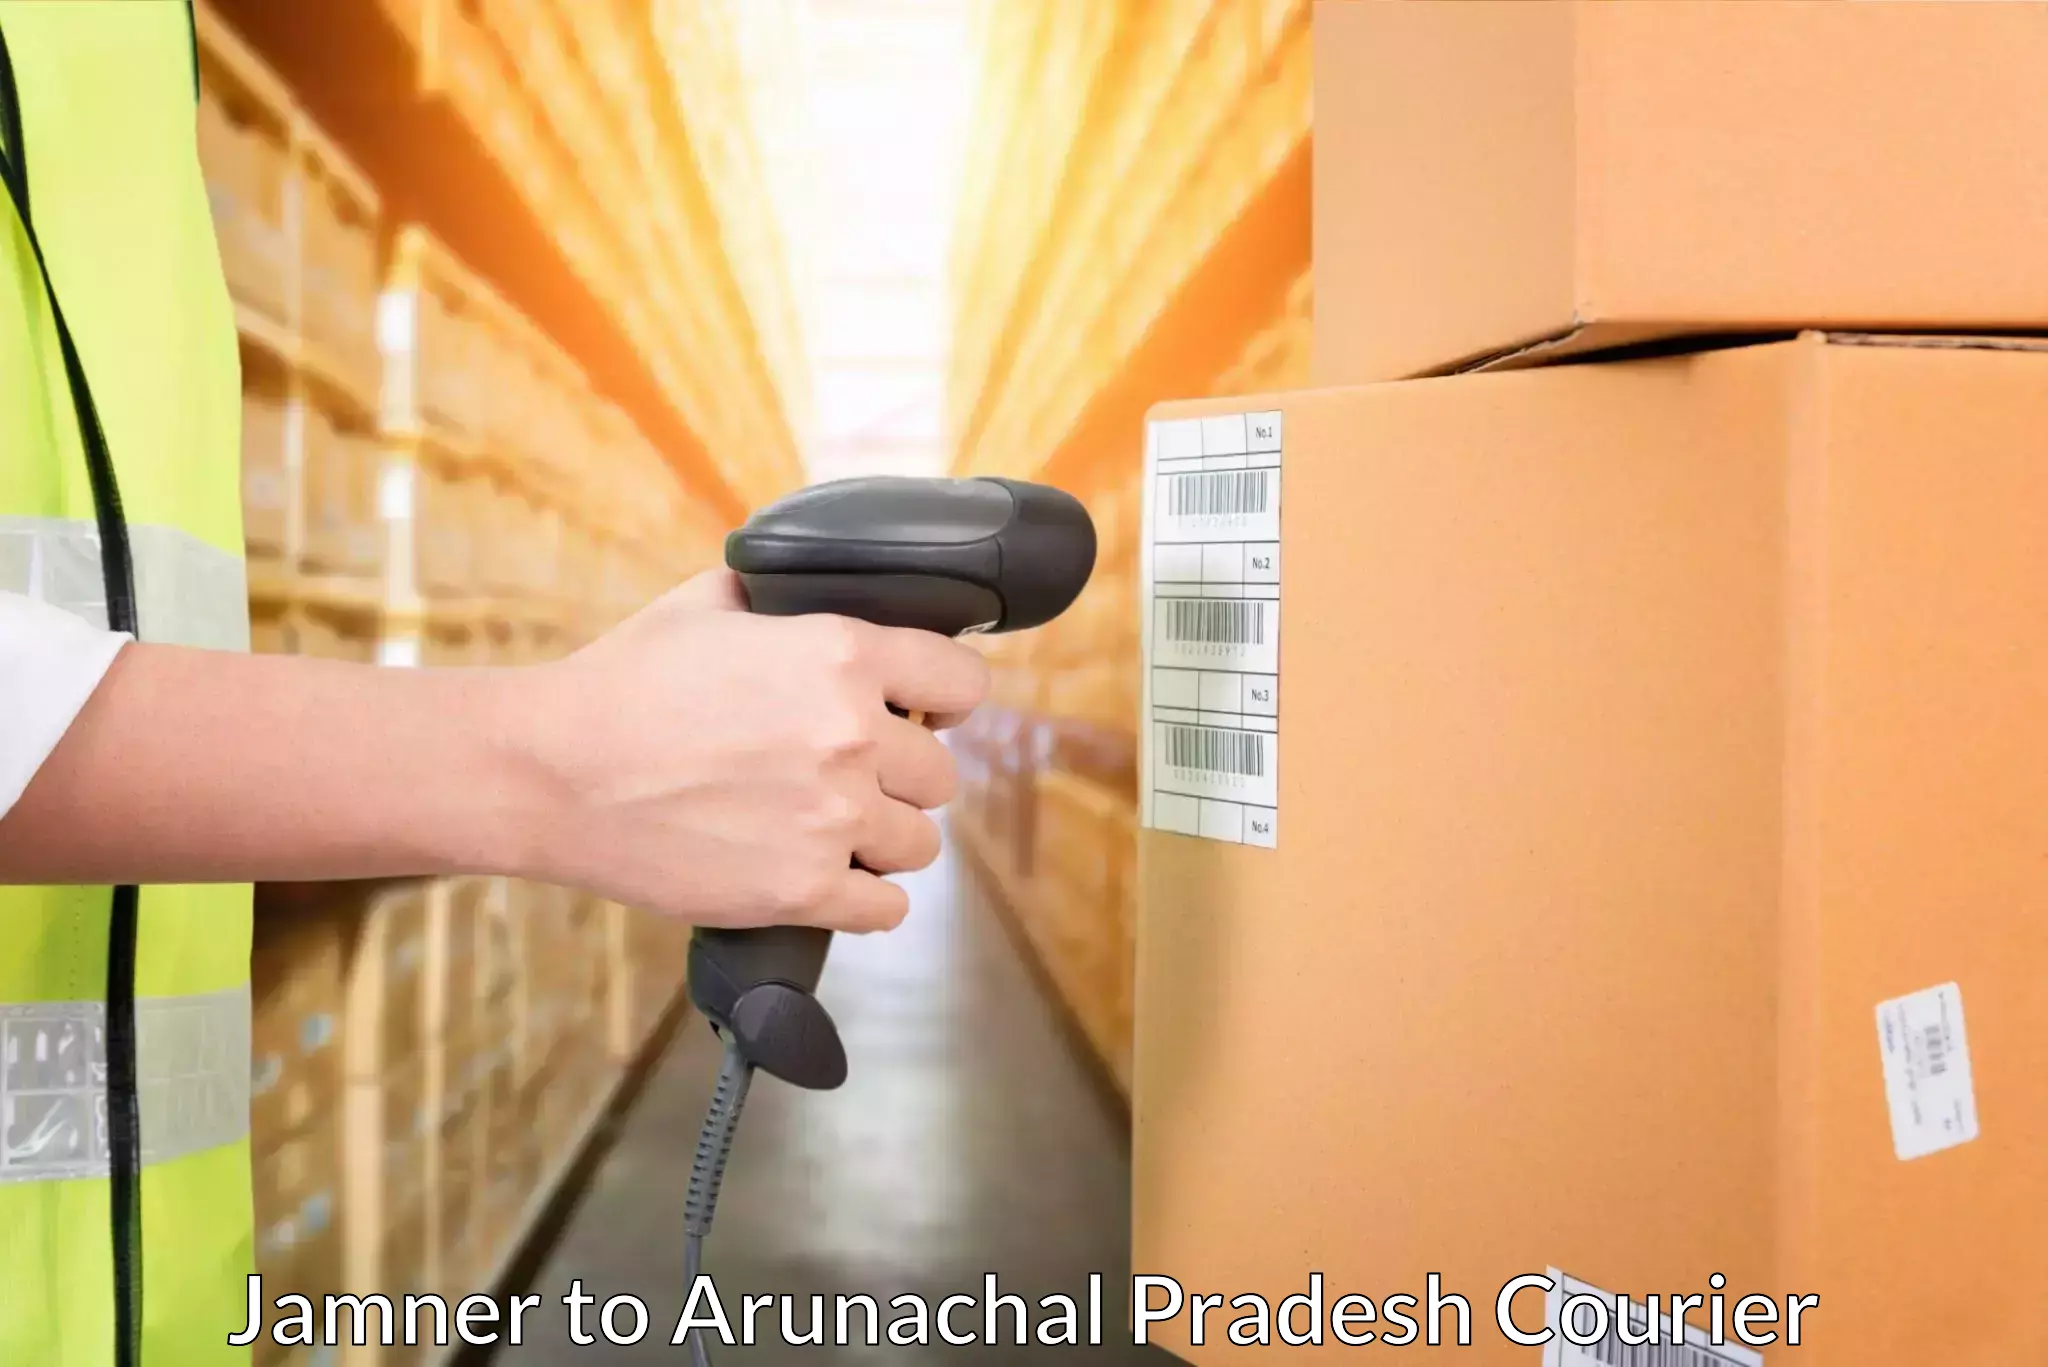 Round-the-clock parcel delivery Jamner to Arunachal Pradesh